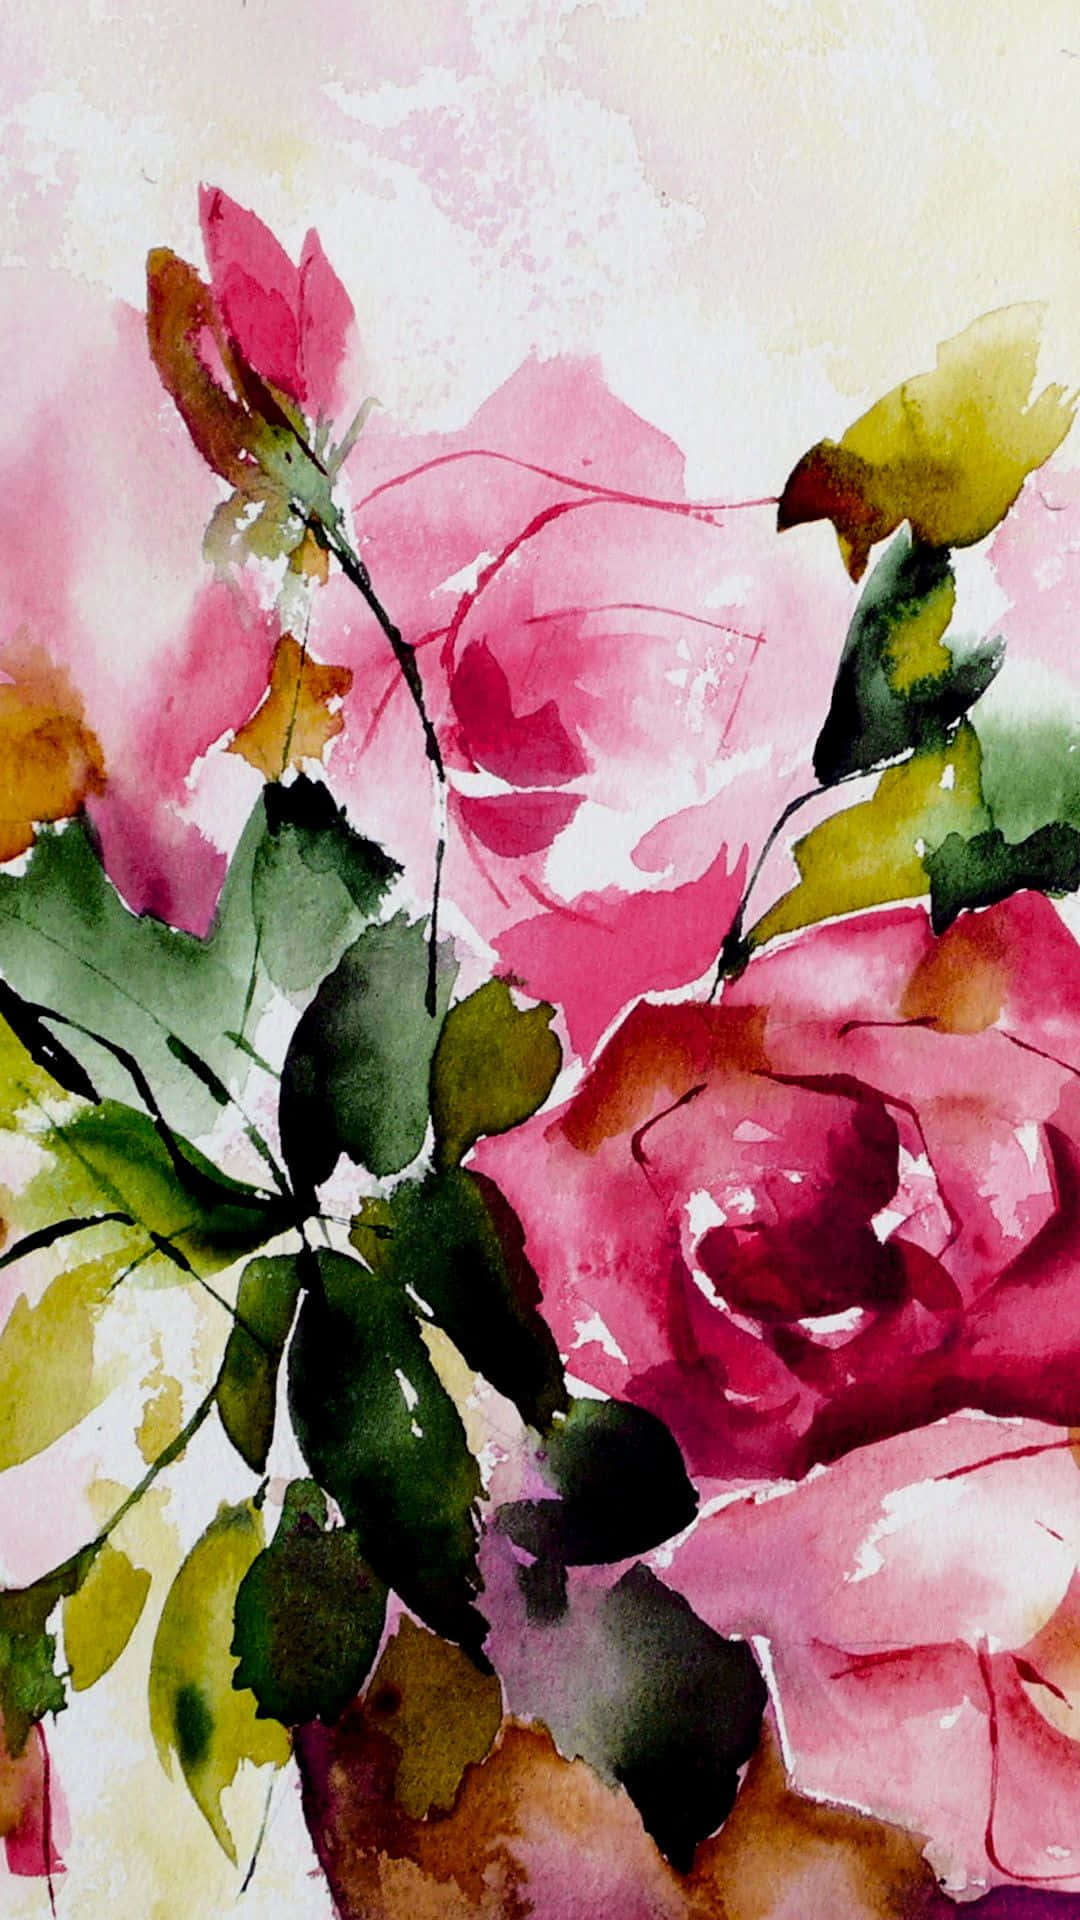 Imagende La Pintura En Acuarela De Una Rosa Floral